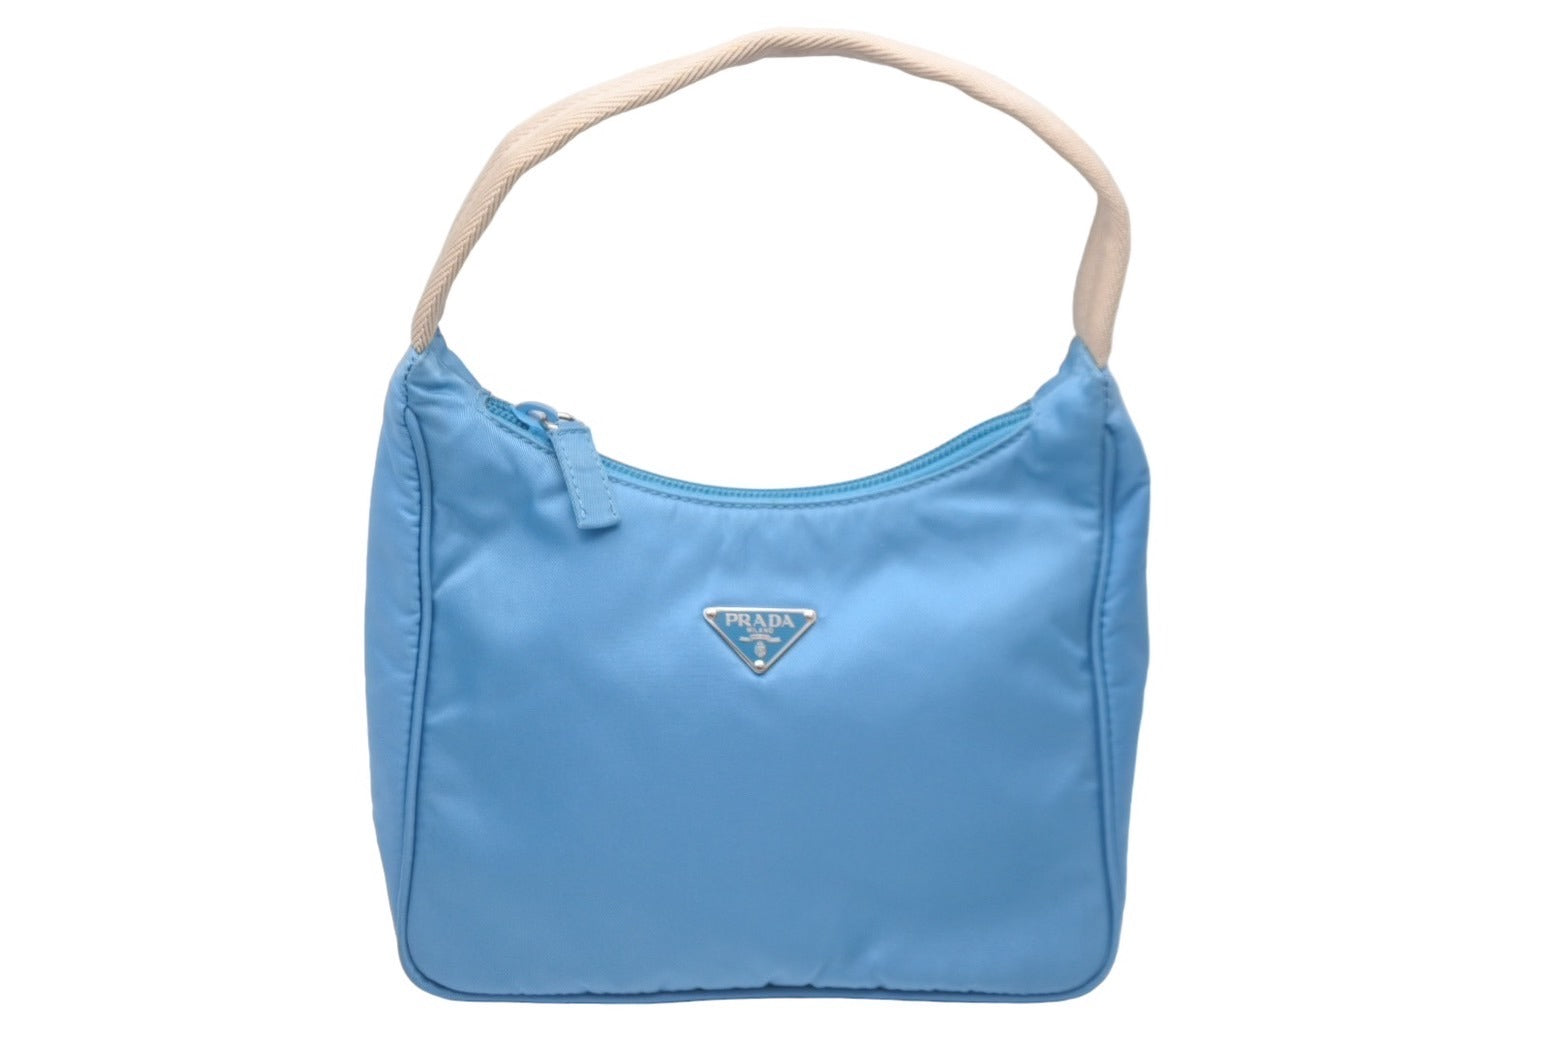 PRADA プラダ ホーボー ハンドバッグ ブルー 水色 ナイロン トライアングルロゴ 鞄 手持ち ワンショルダー 美品 中古 60130 –  Casanova Vintage